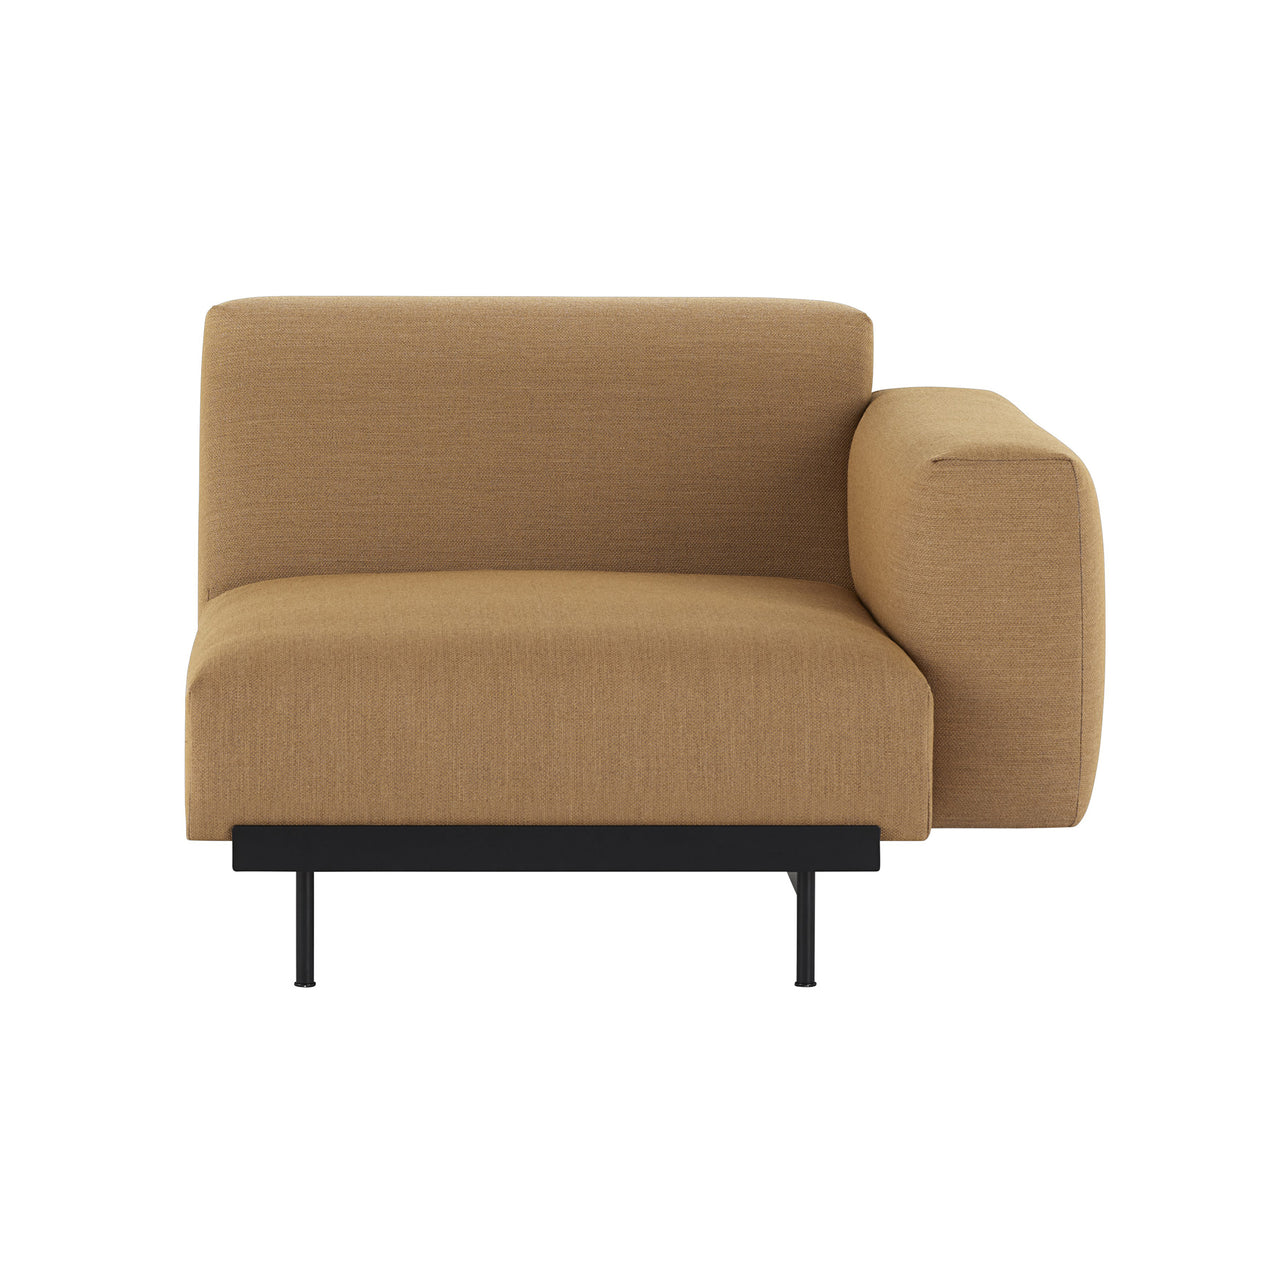 In Situ Modular Sofa: Modules + Right Armrest